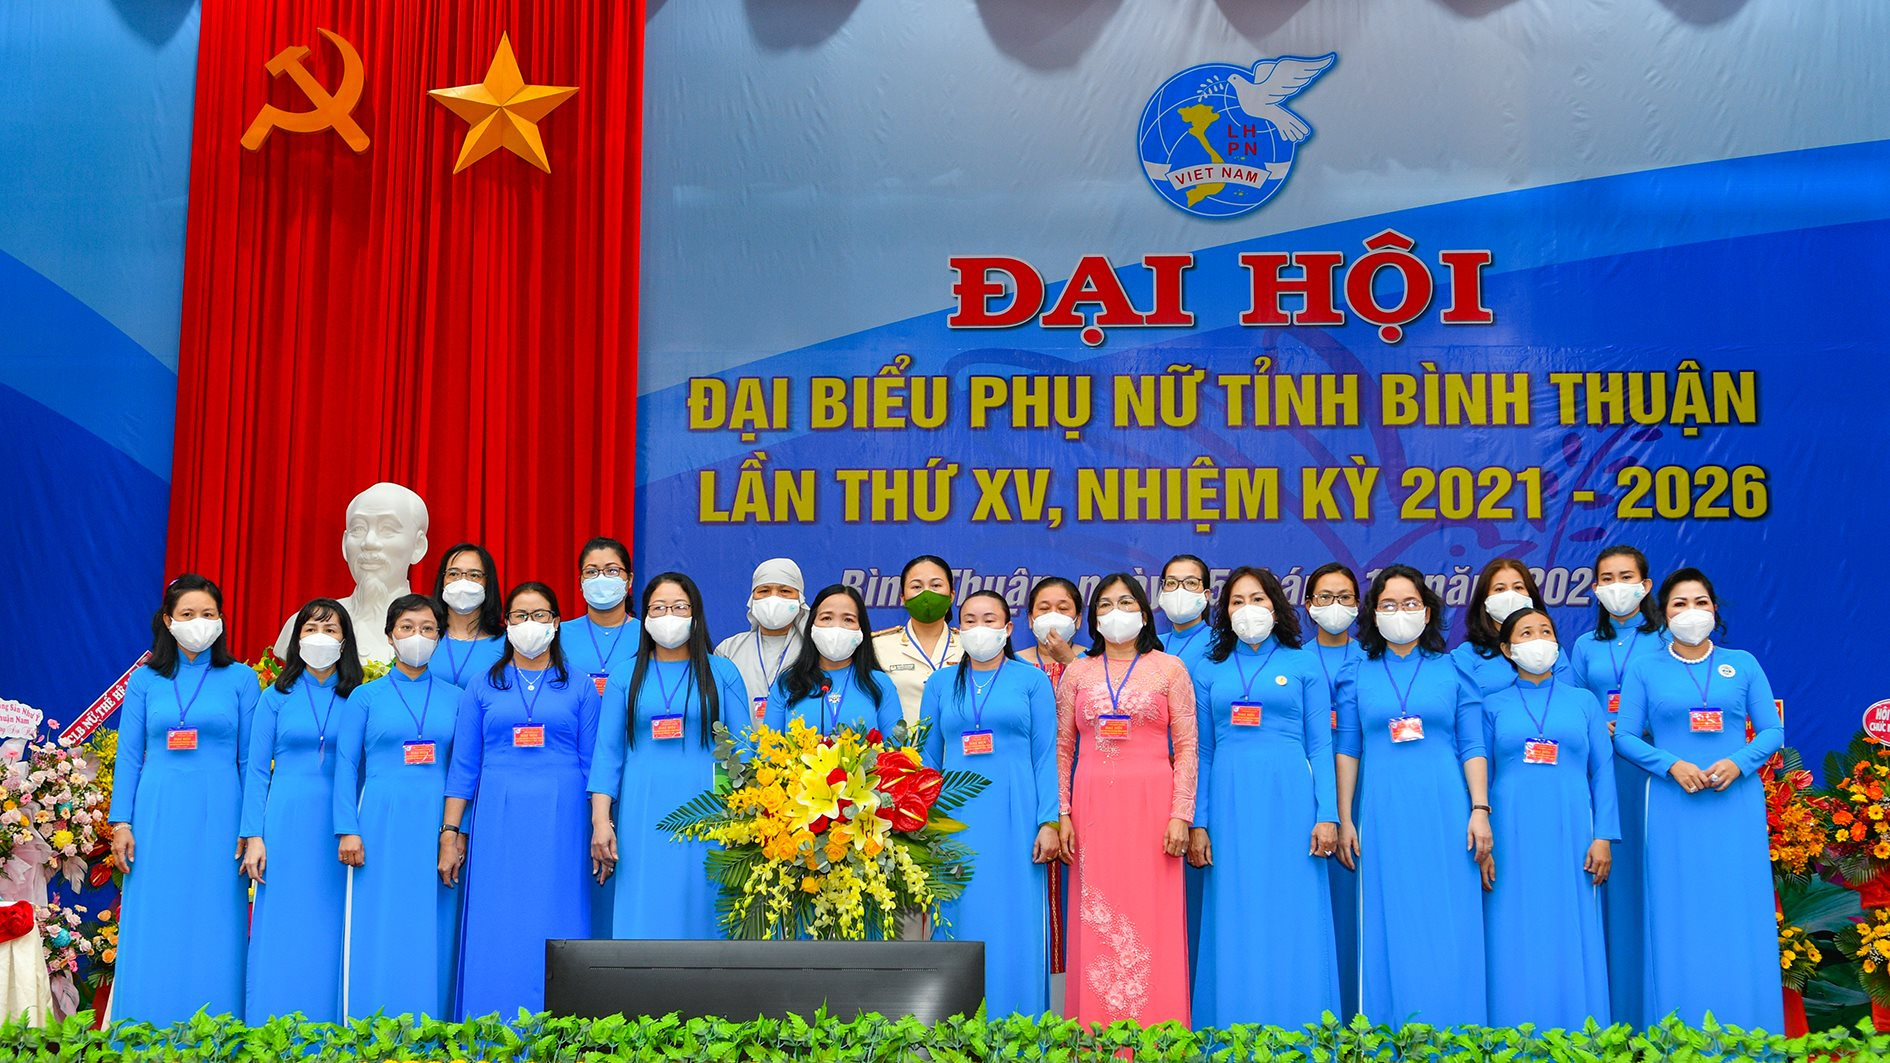 ban-chap-hanh-hoi-phu-nu-tinh-nhiem-ky-2021-2026-ra-mat-dai-hoi-anh-nl-.jpg